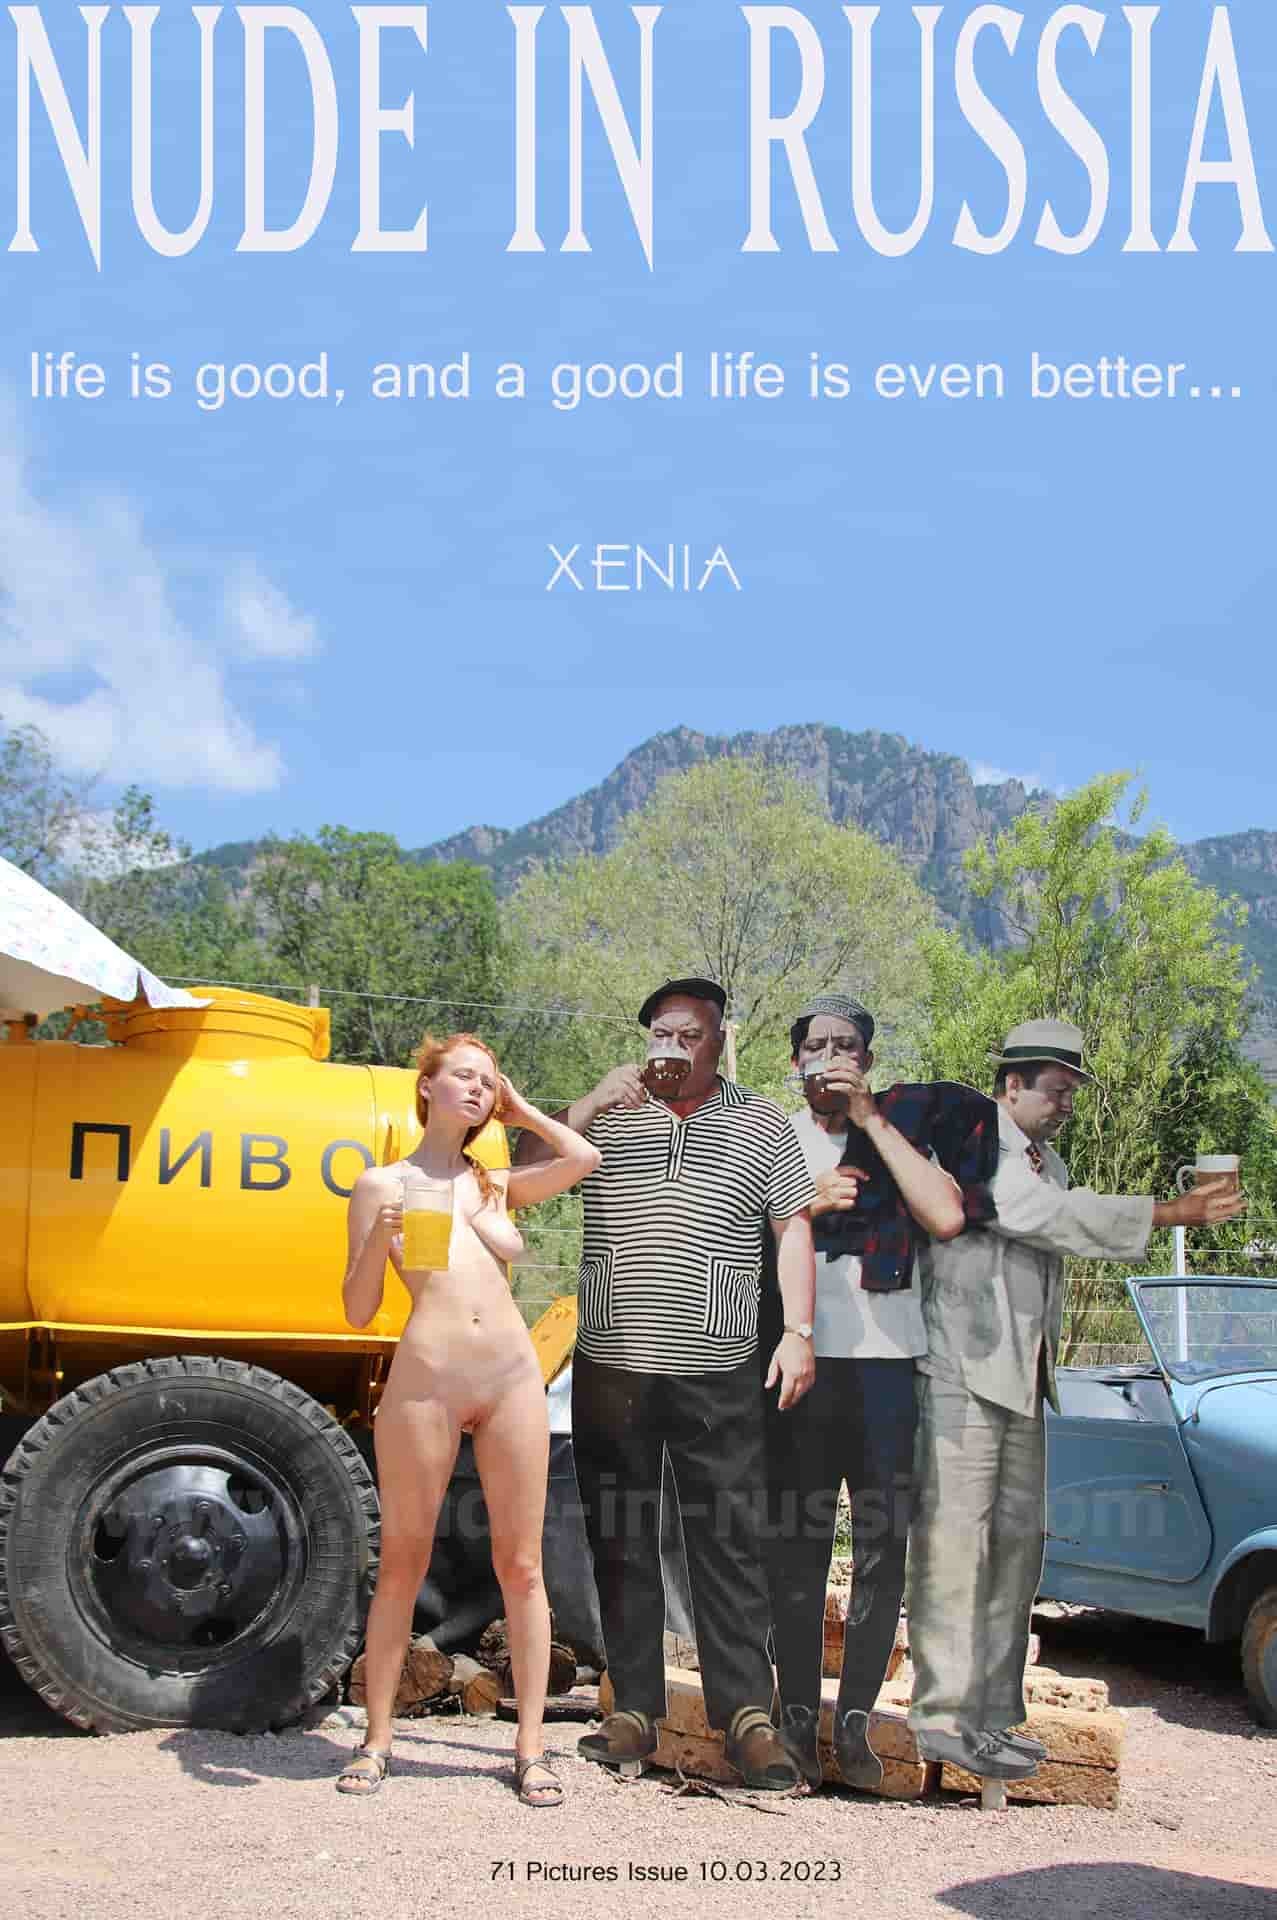 행복을 밝히다 - 제니아 - 삶은 좋은데, 좋은 삶이 더 좋다